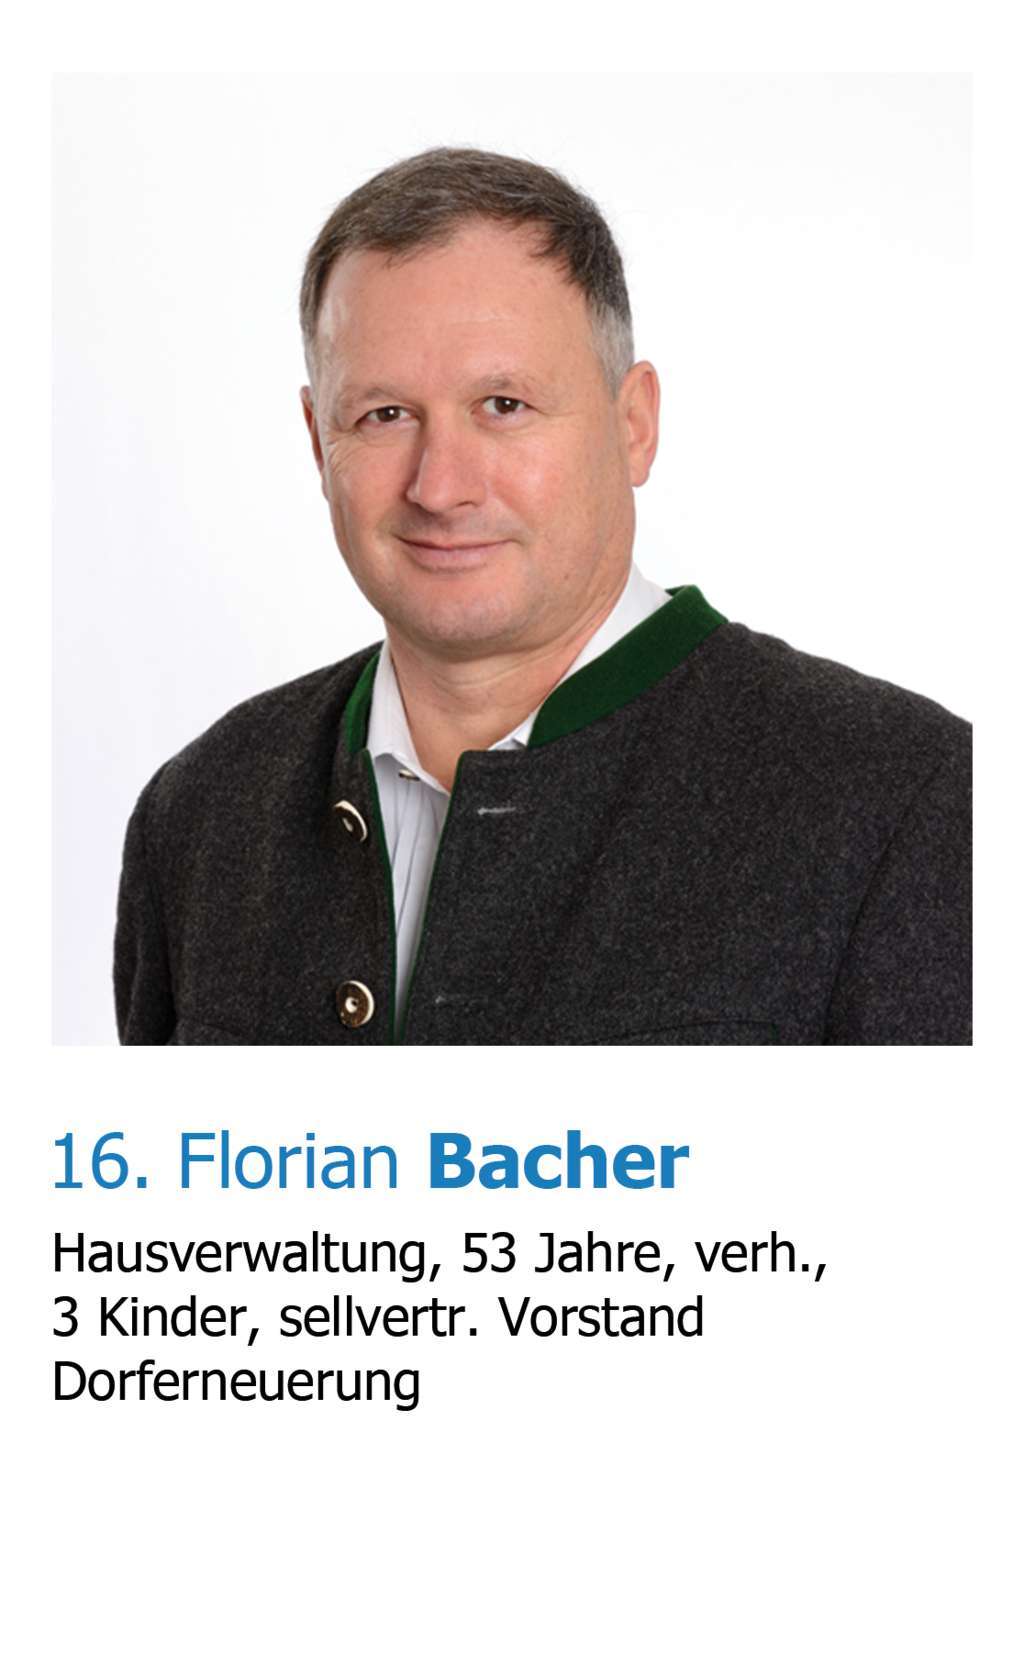 Florian Bacher